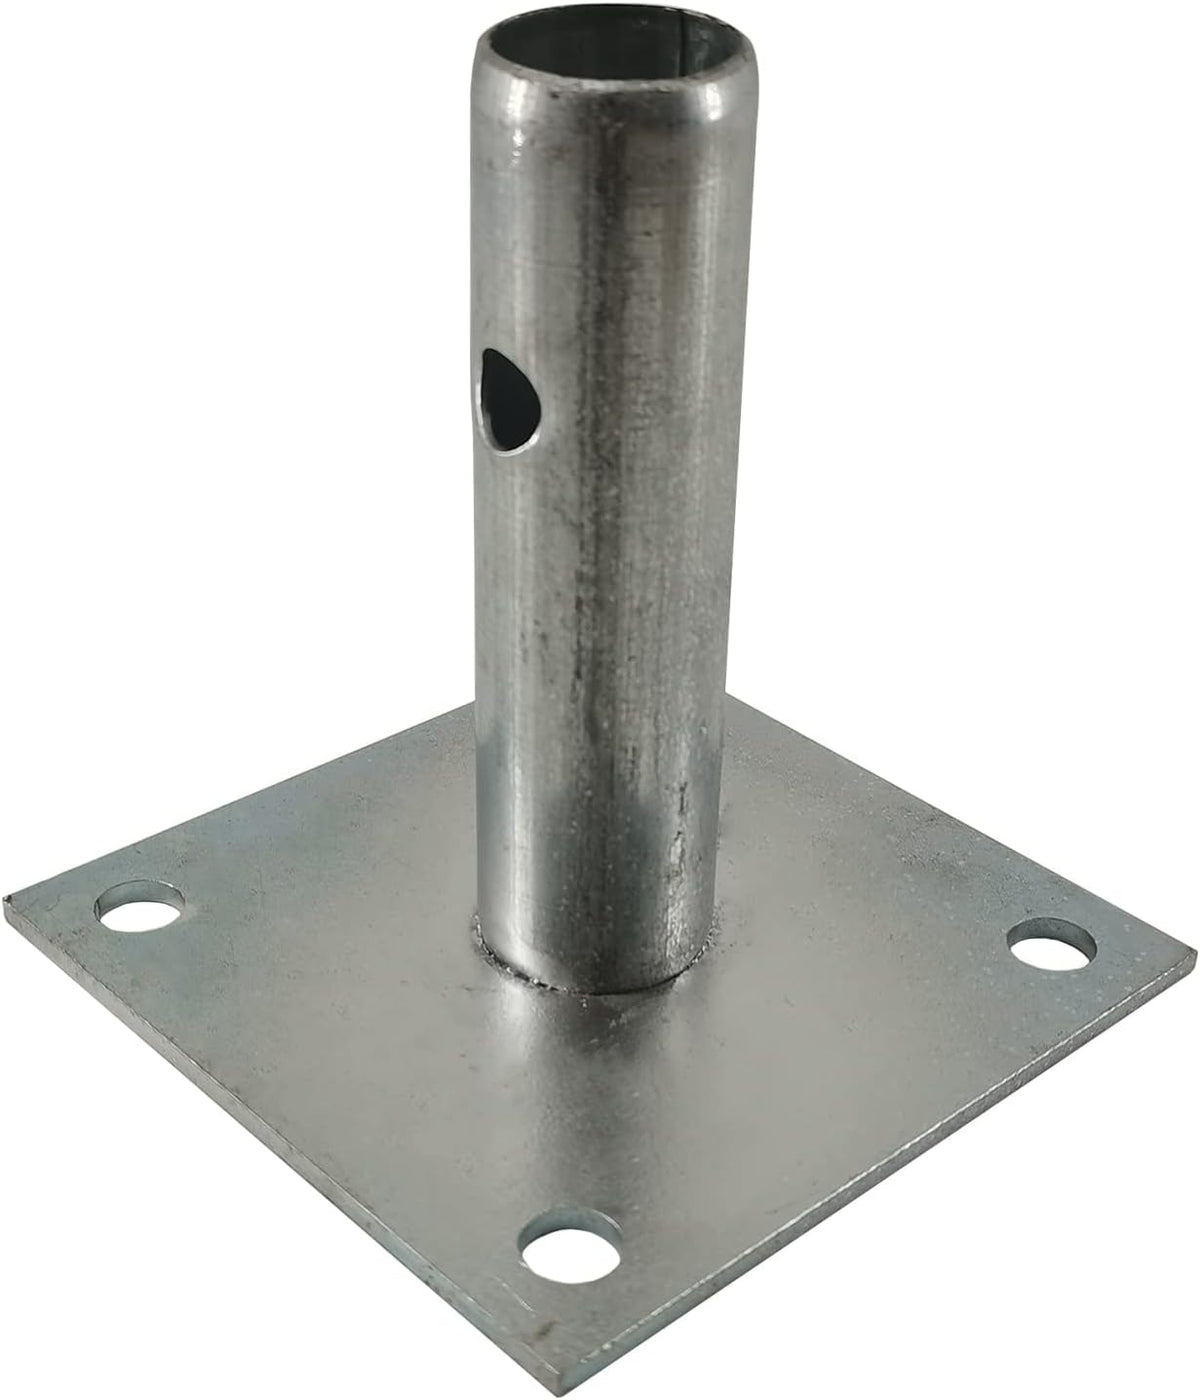 5 in. Scaffold Baseplate Durability Heavy-Duty Steel (4-Pack) Set